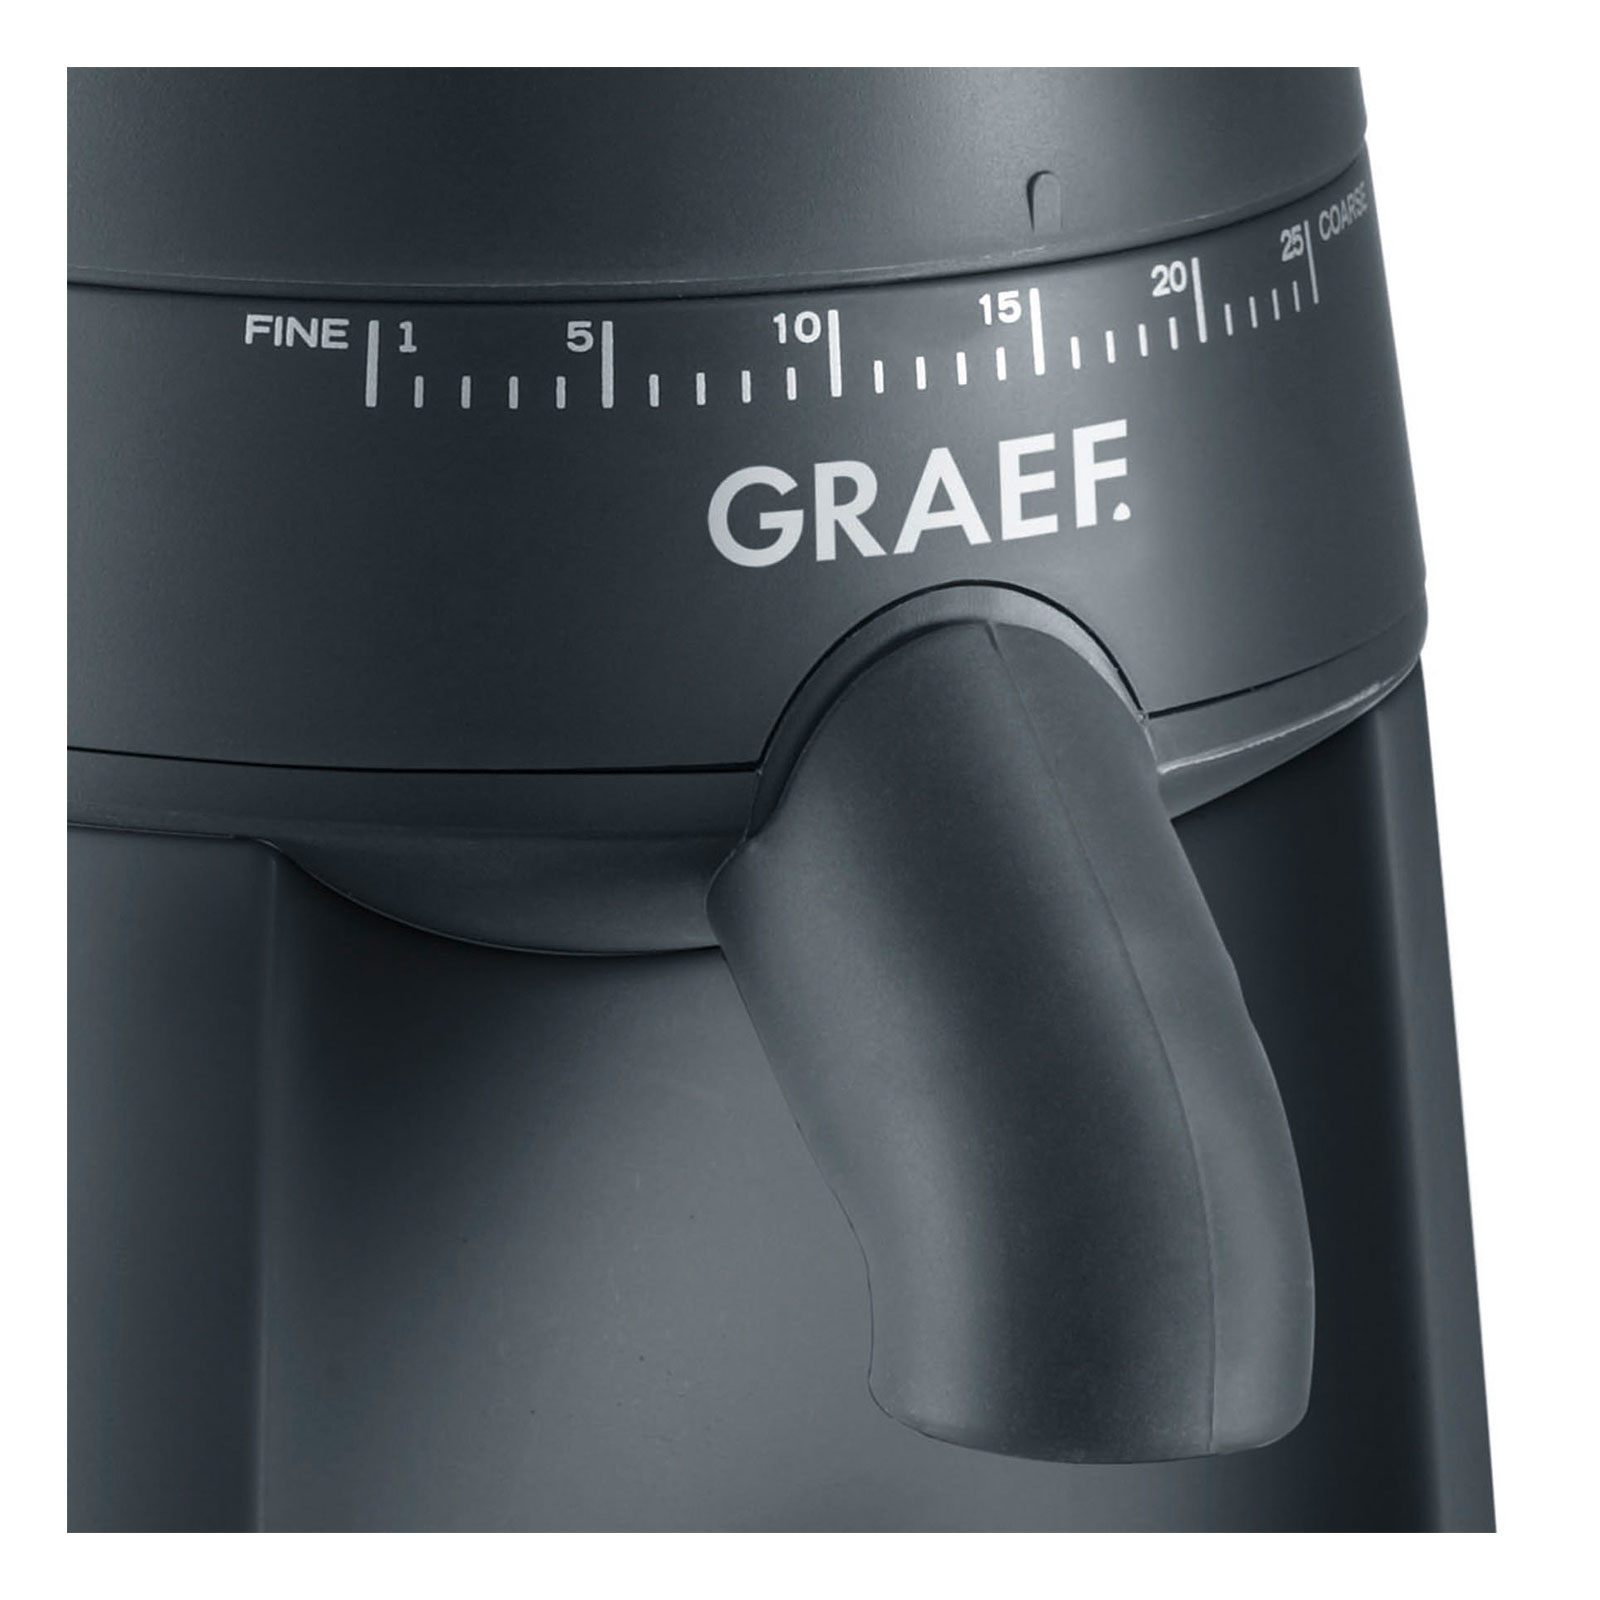 GRAEF ES 702 EU pivalla Set Siebträger inkl. Kaffeemühle CM702EU